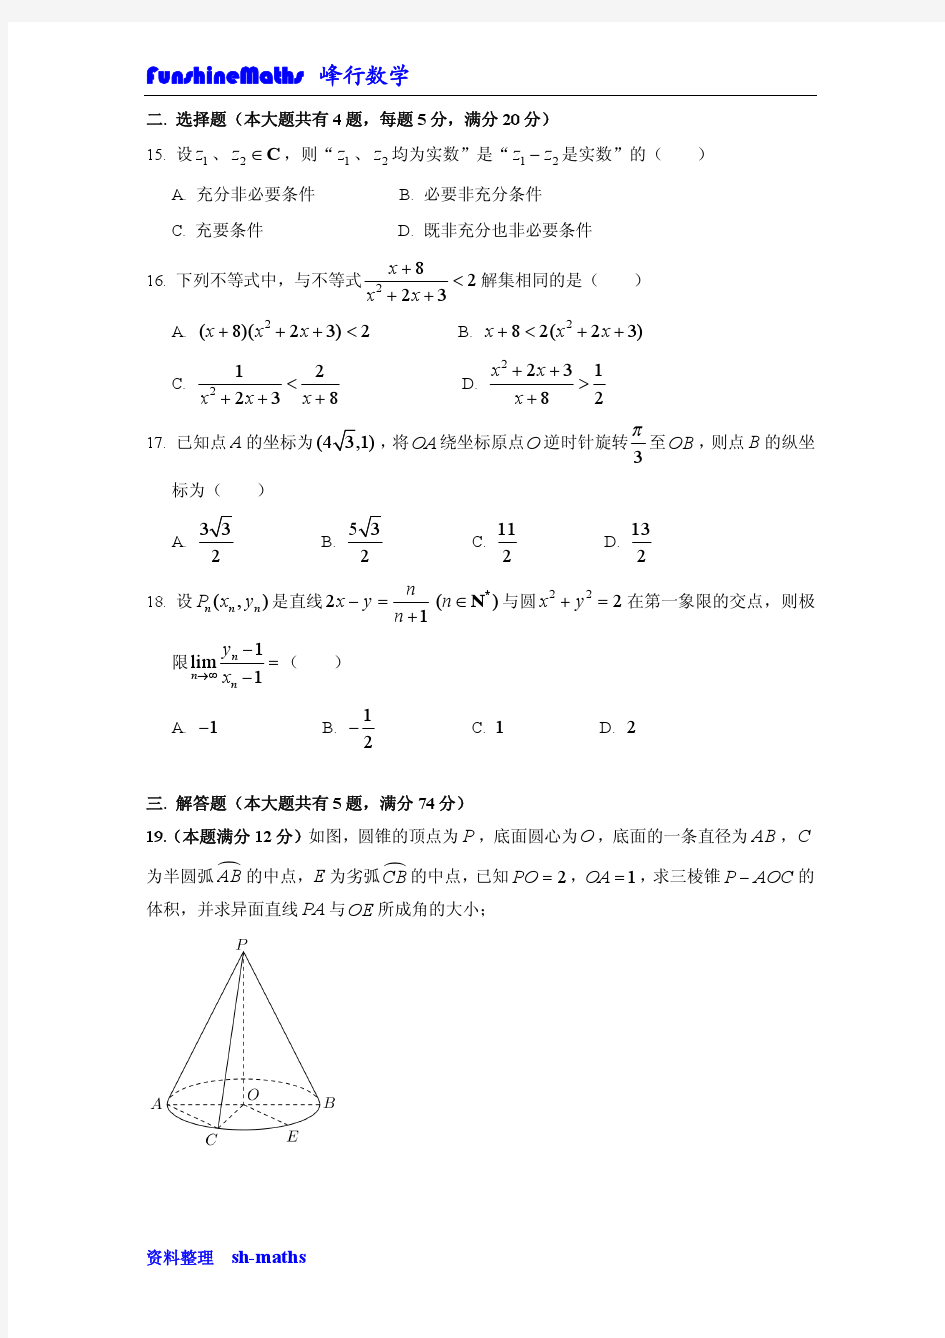 2015年上海高考数学(文科)真题试卷